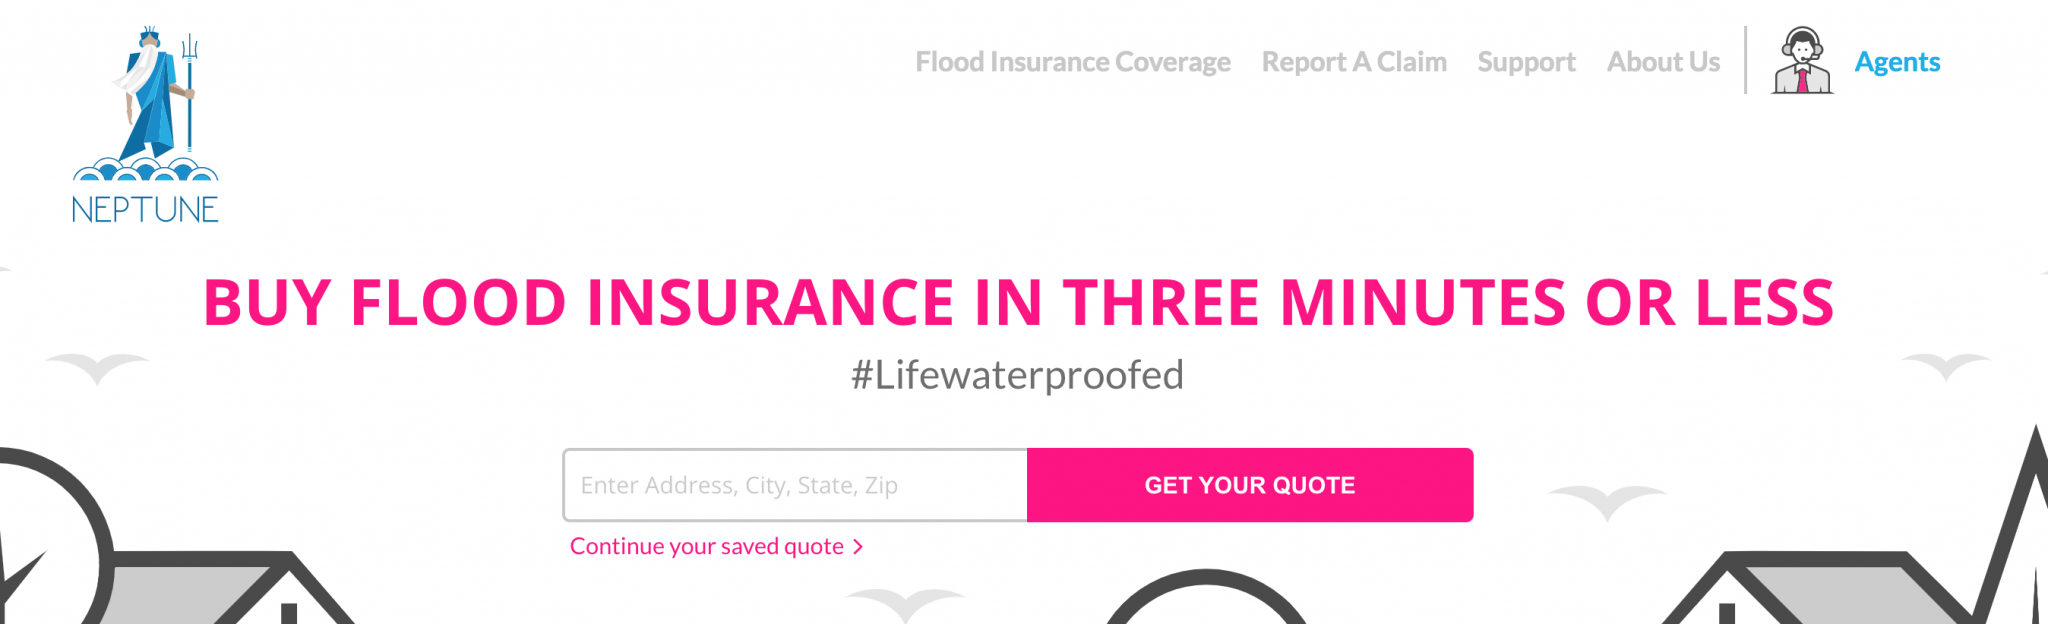 perks of neptune flood insurance